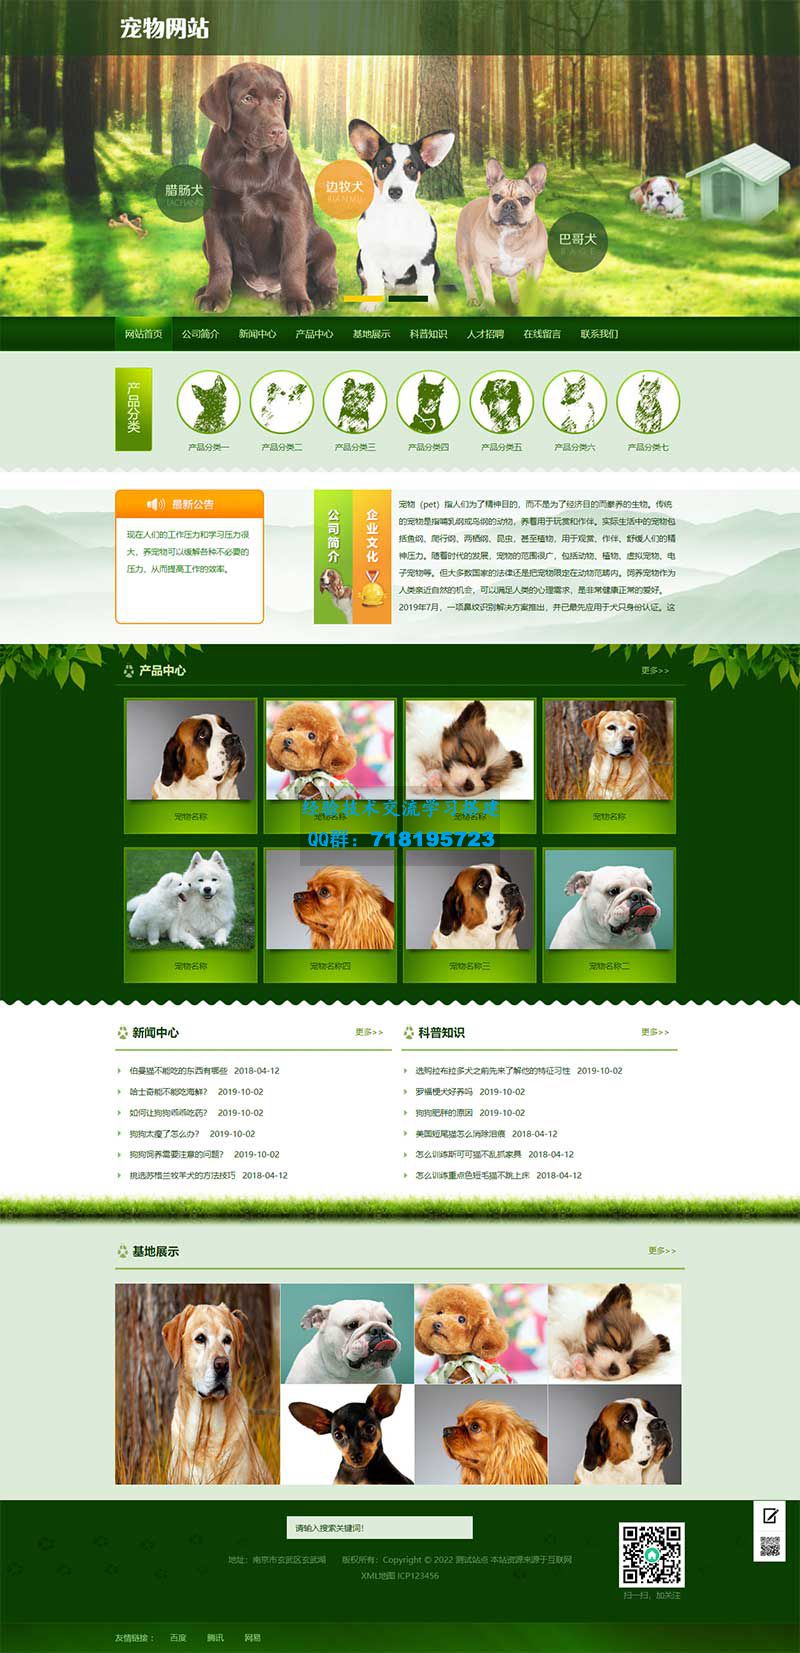     宠物店宠物培训机构网站源码 宠物饲养育种机构类pbootcms网站模板
